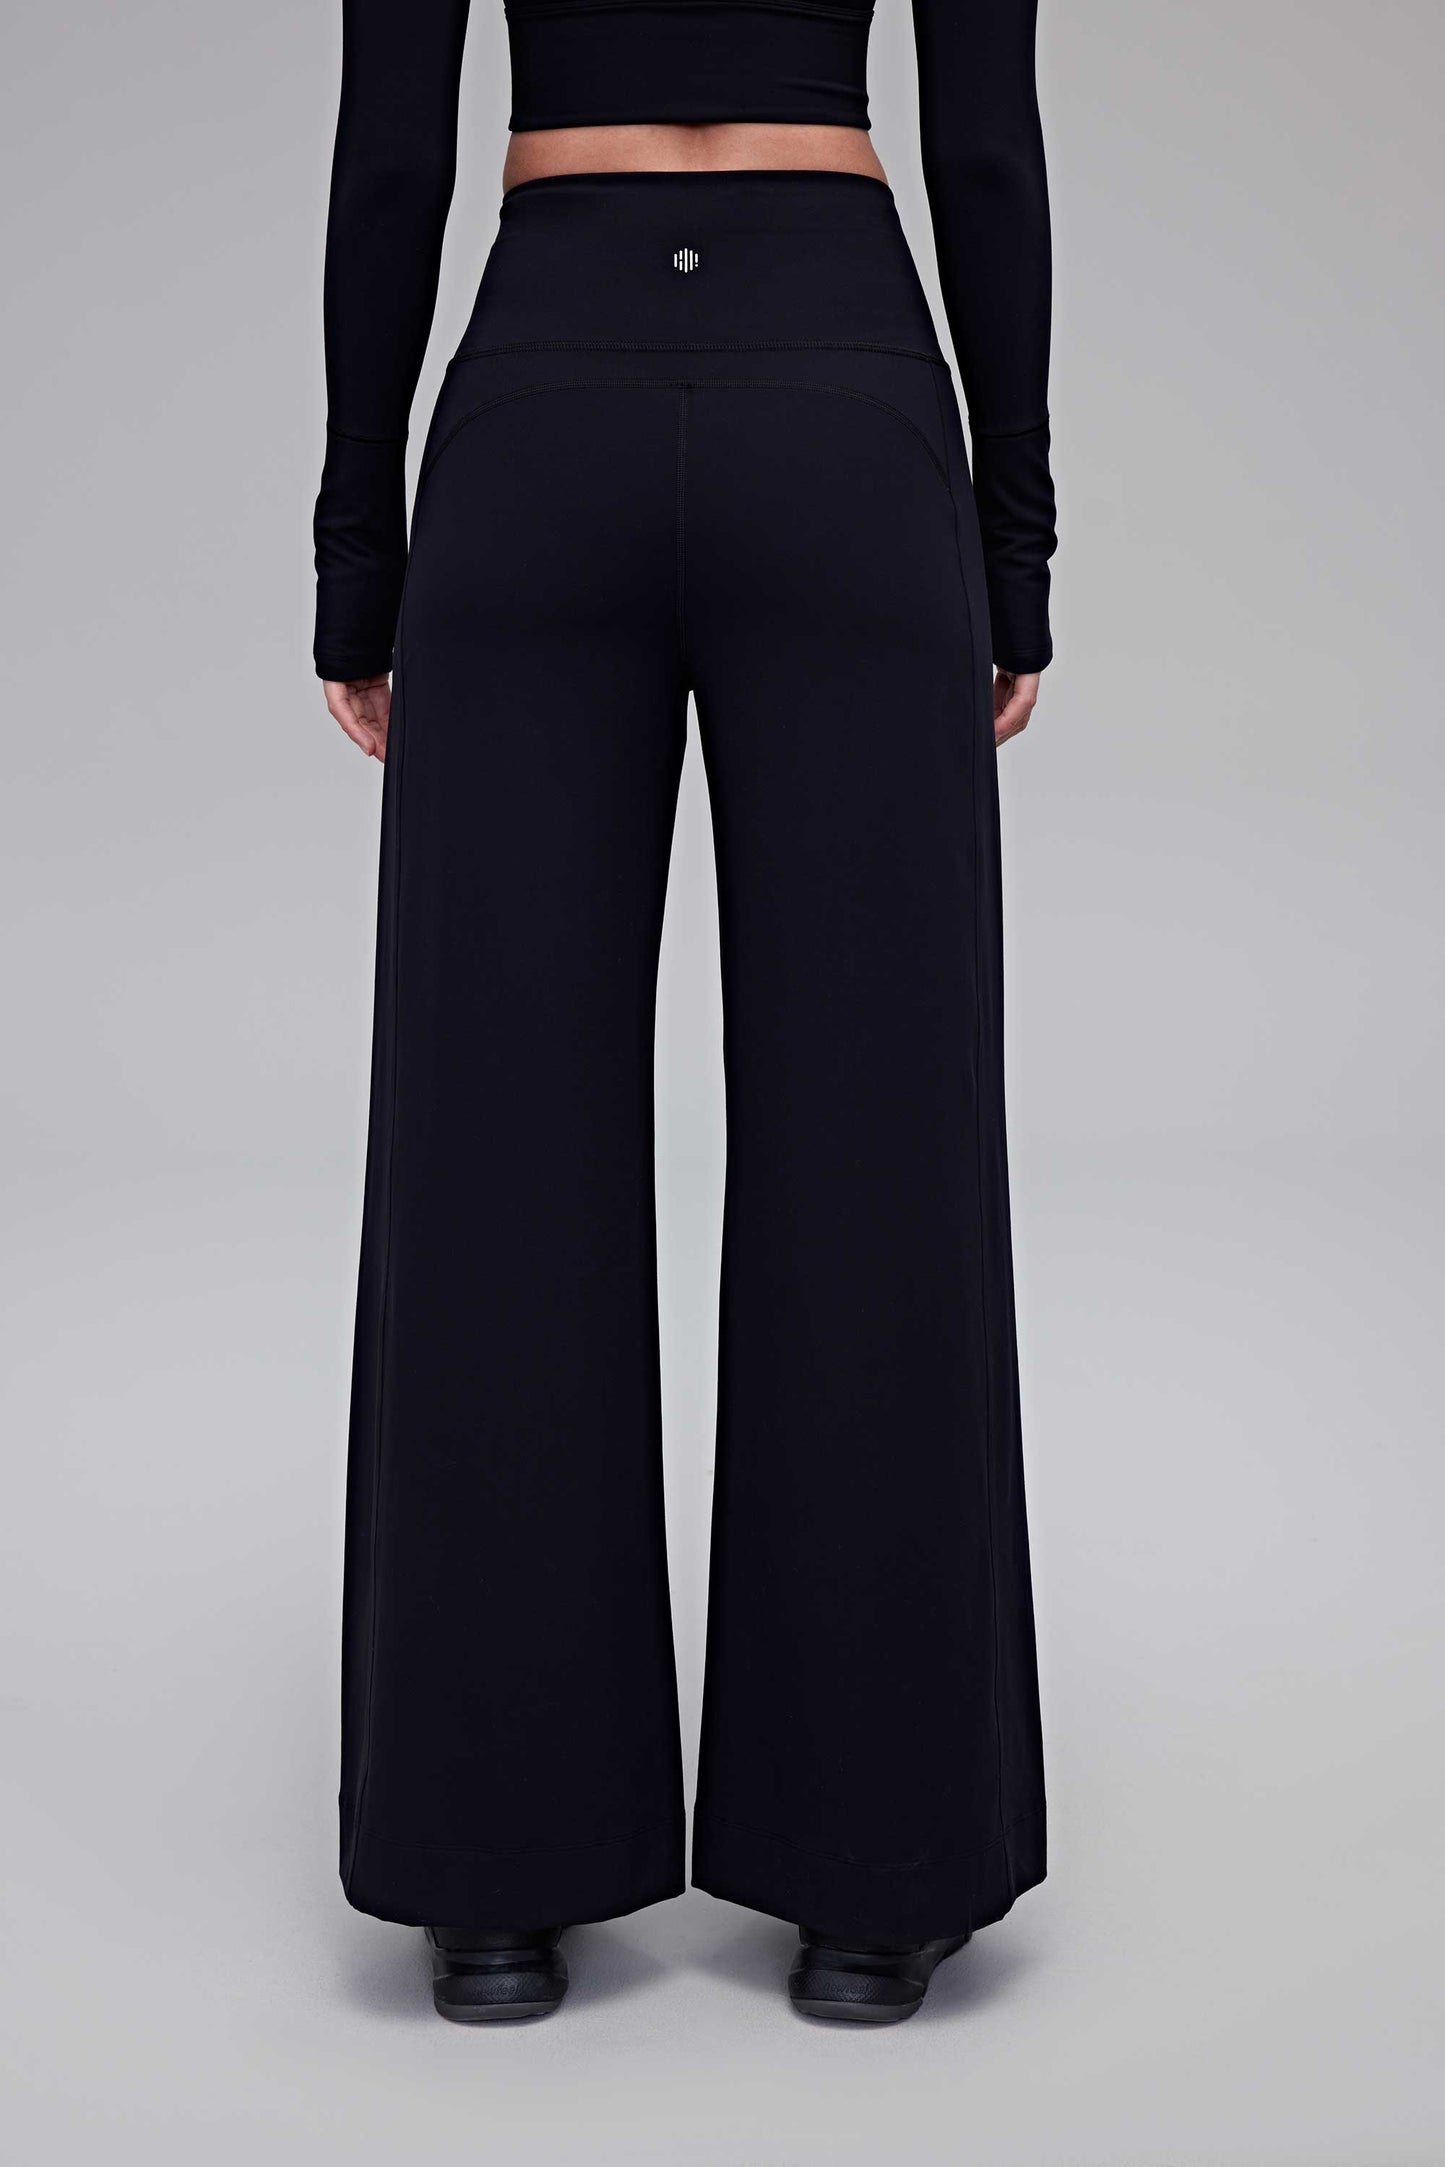 A woman wearing black pants